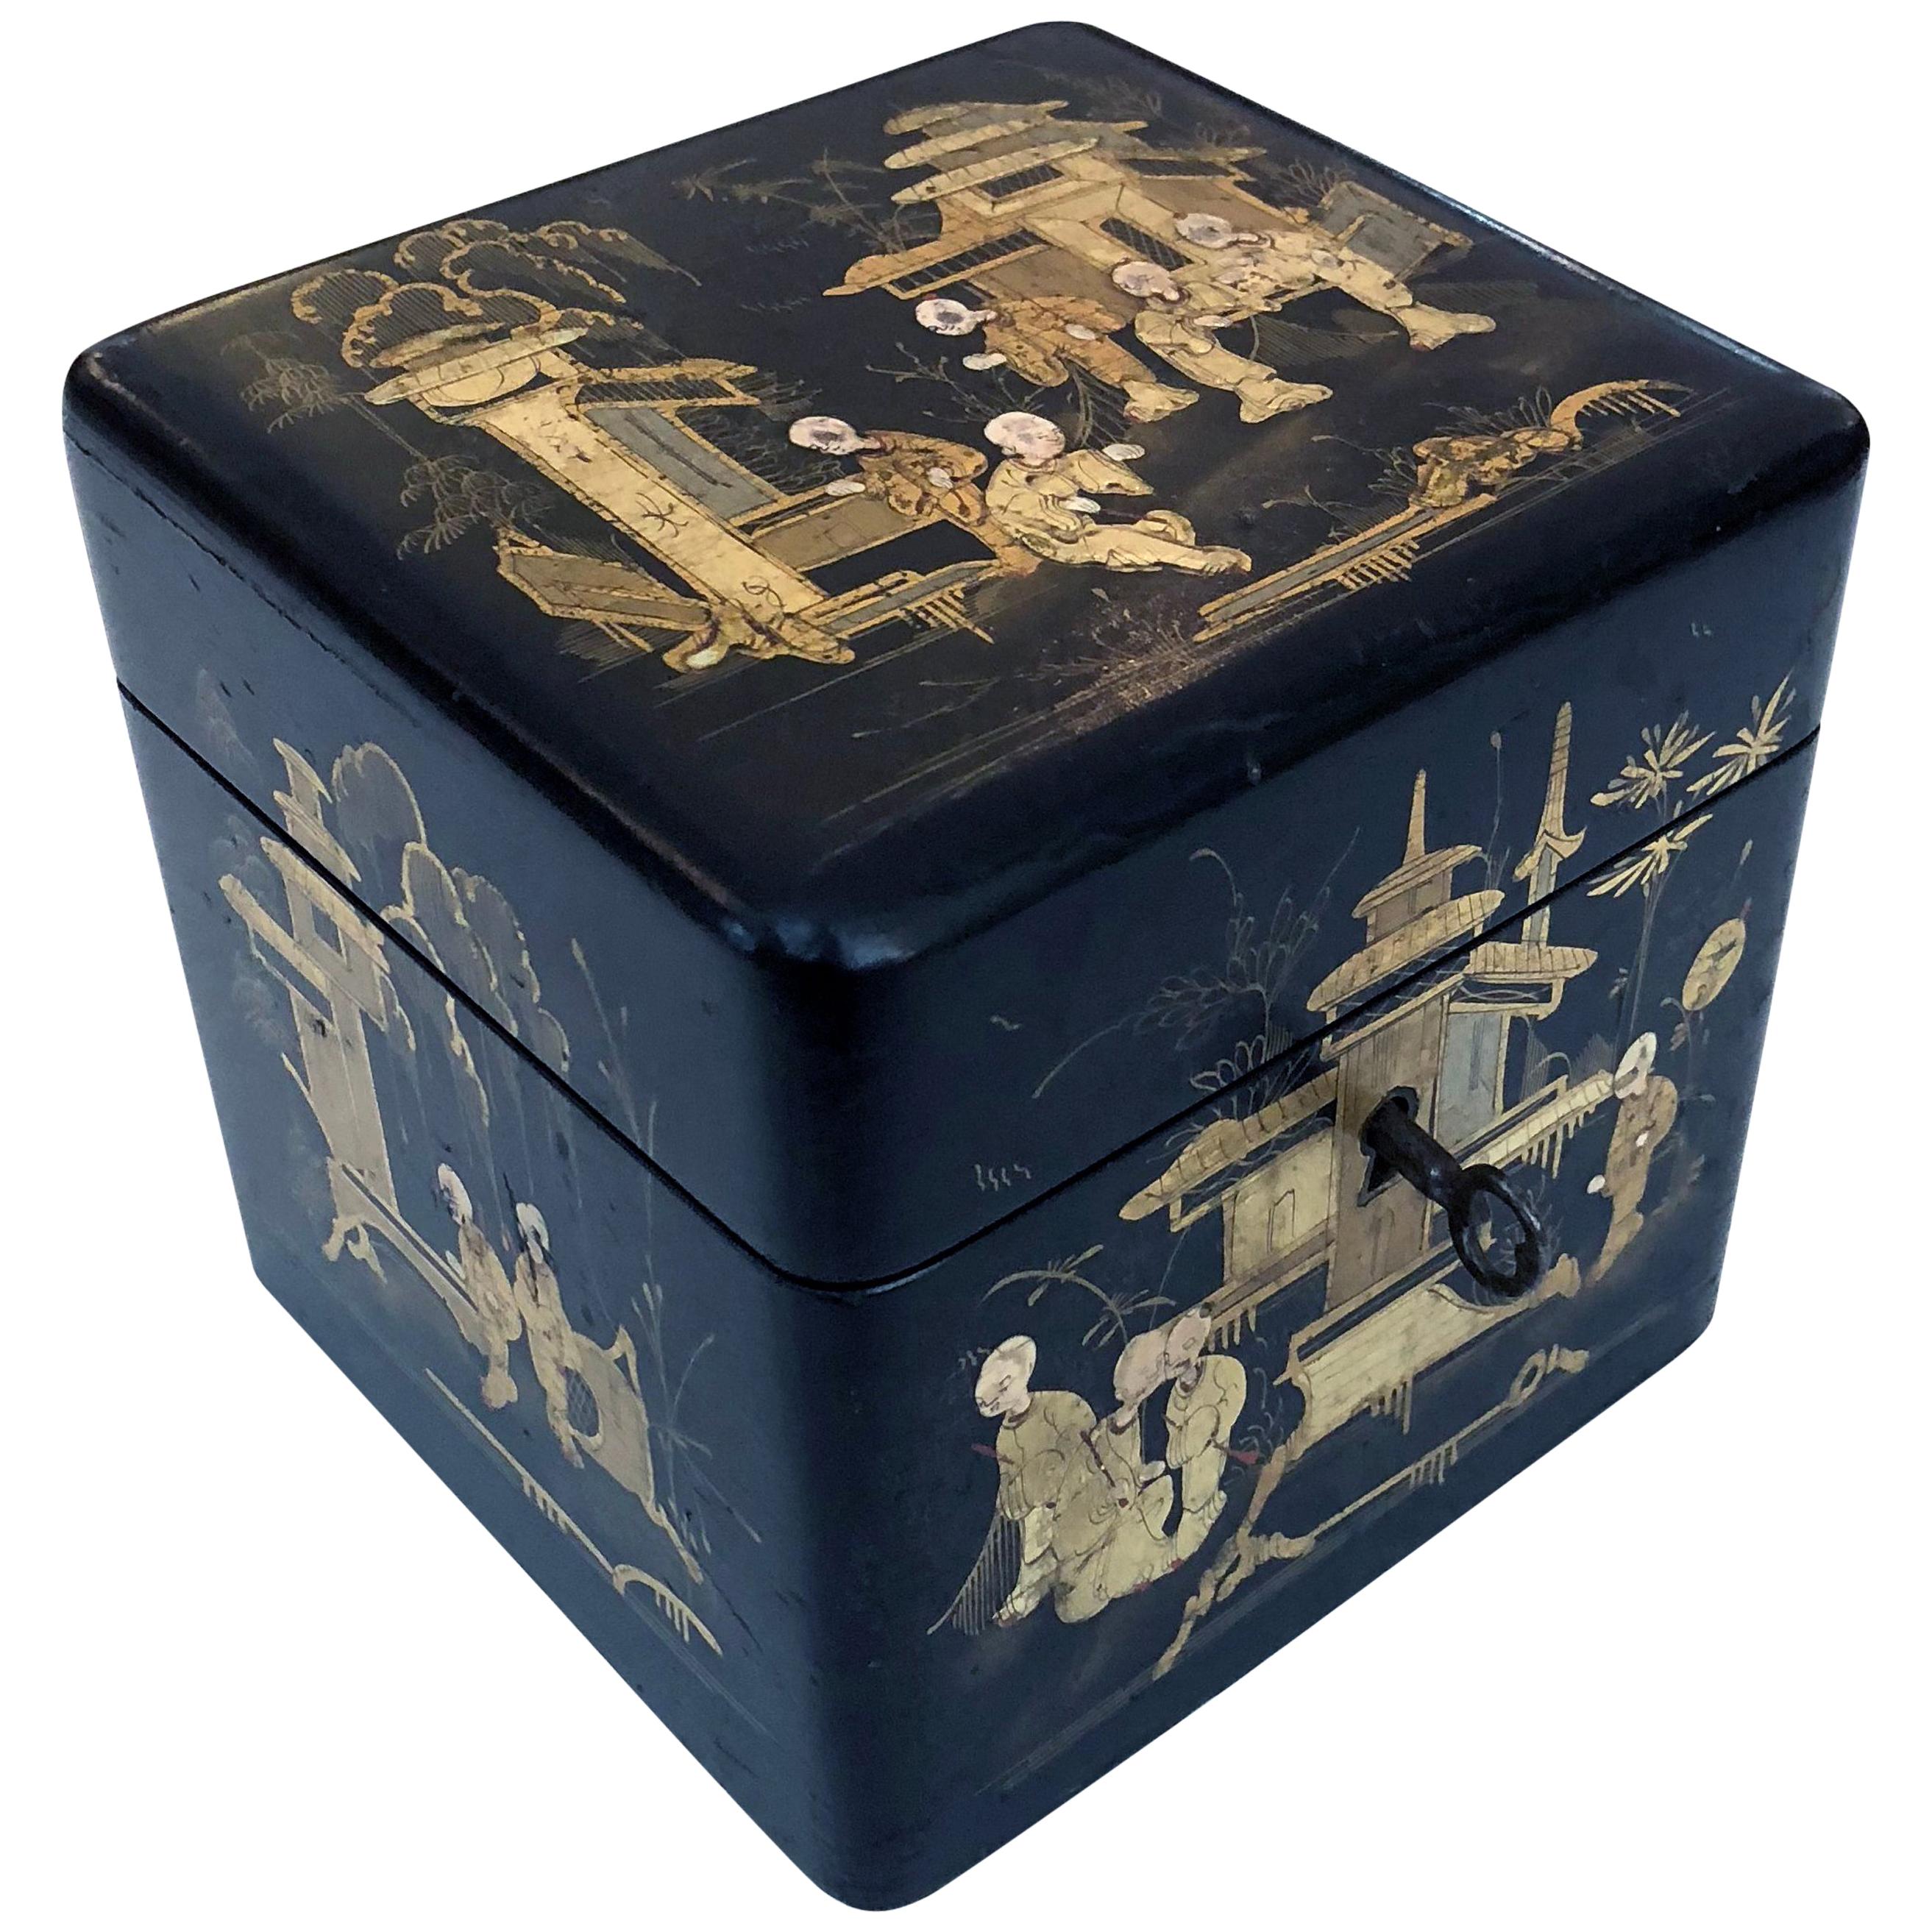 Encantadora caja de té cuadrada con forma de japón de la Regencia inglesa